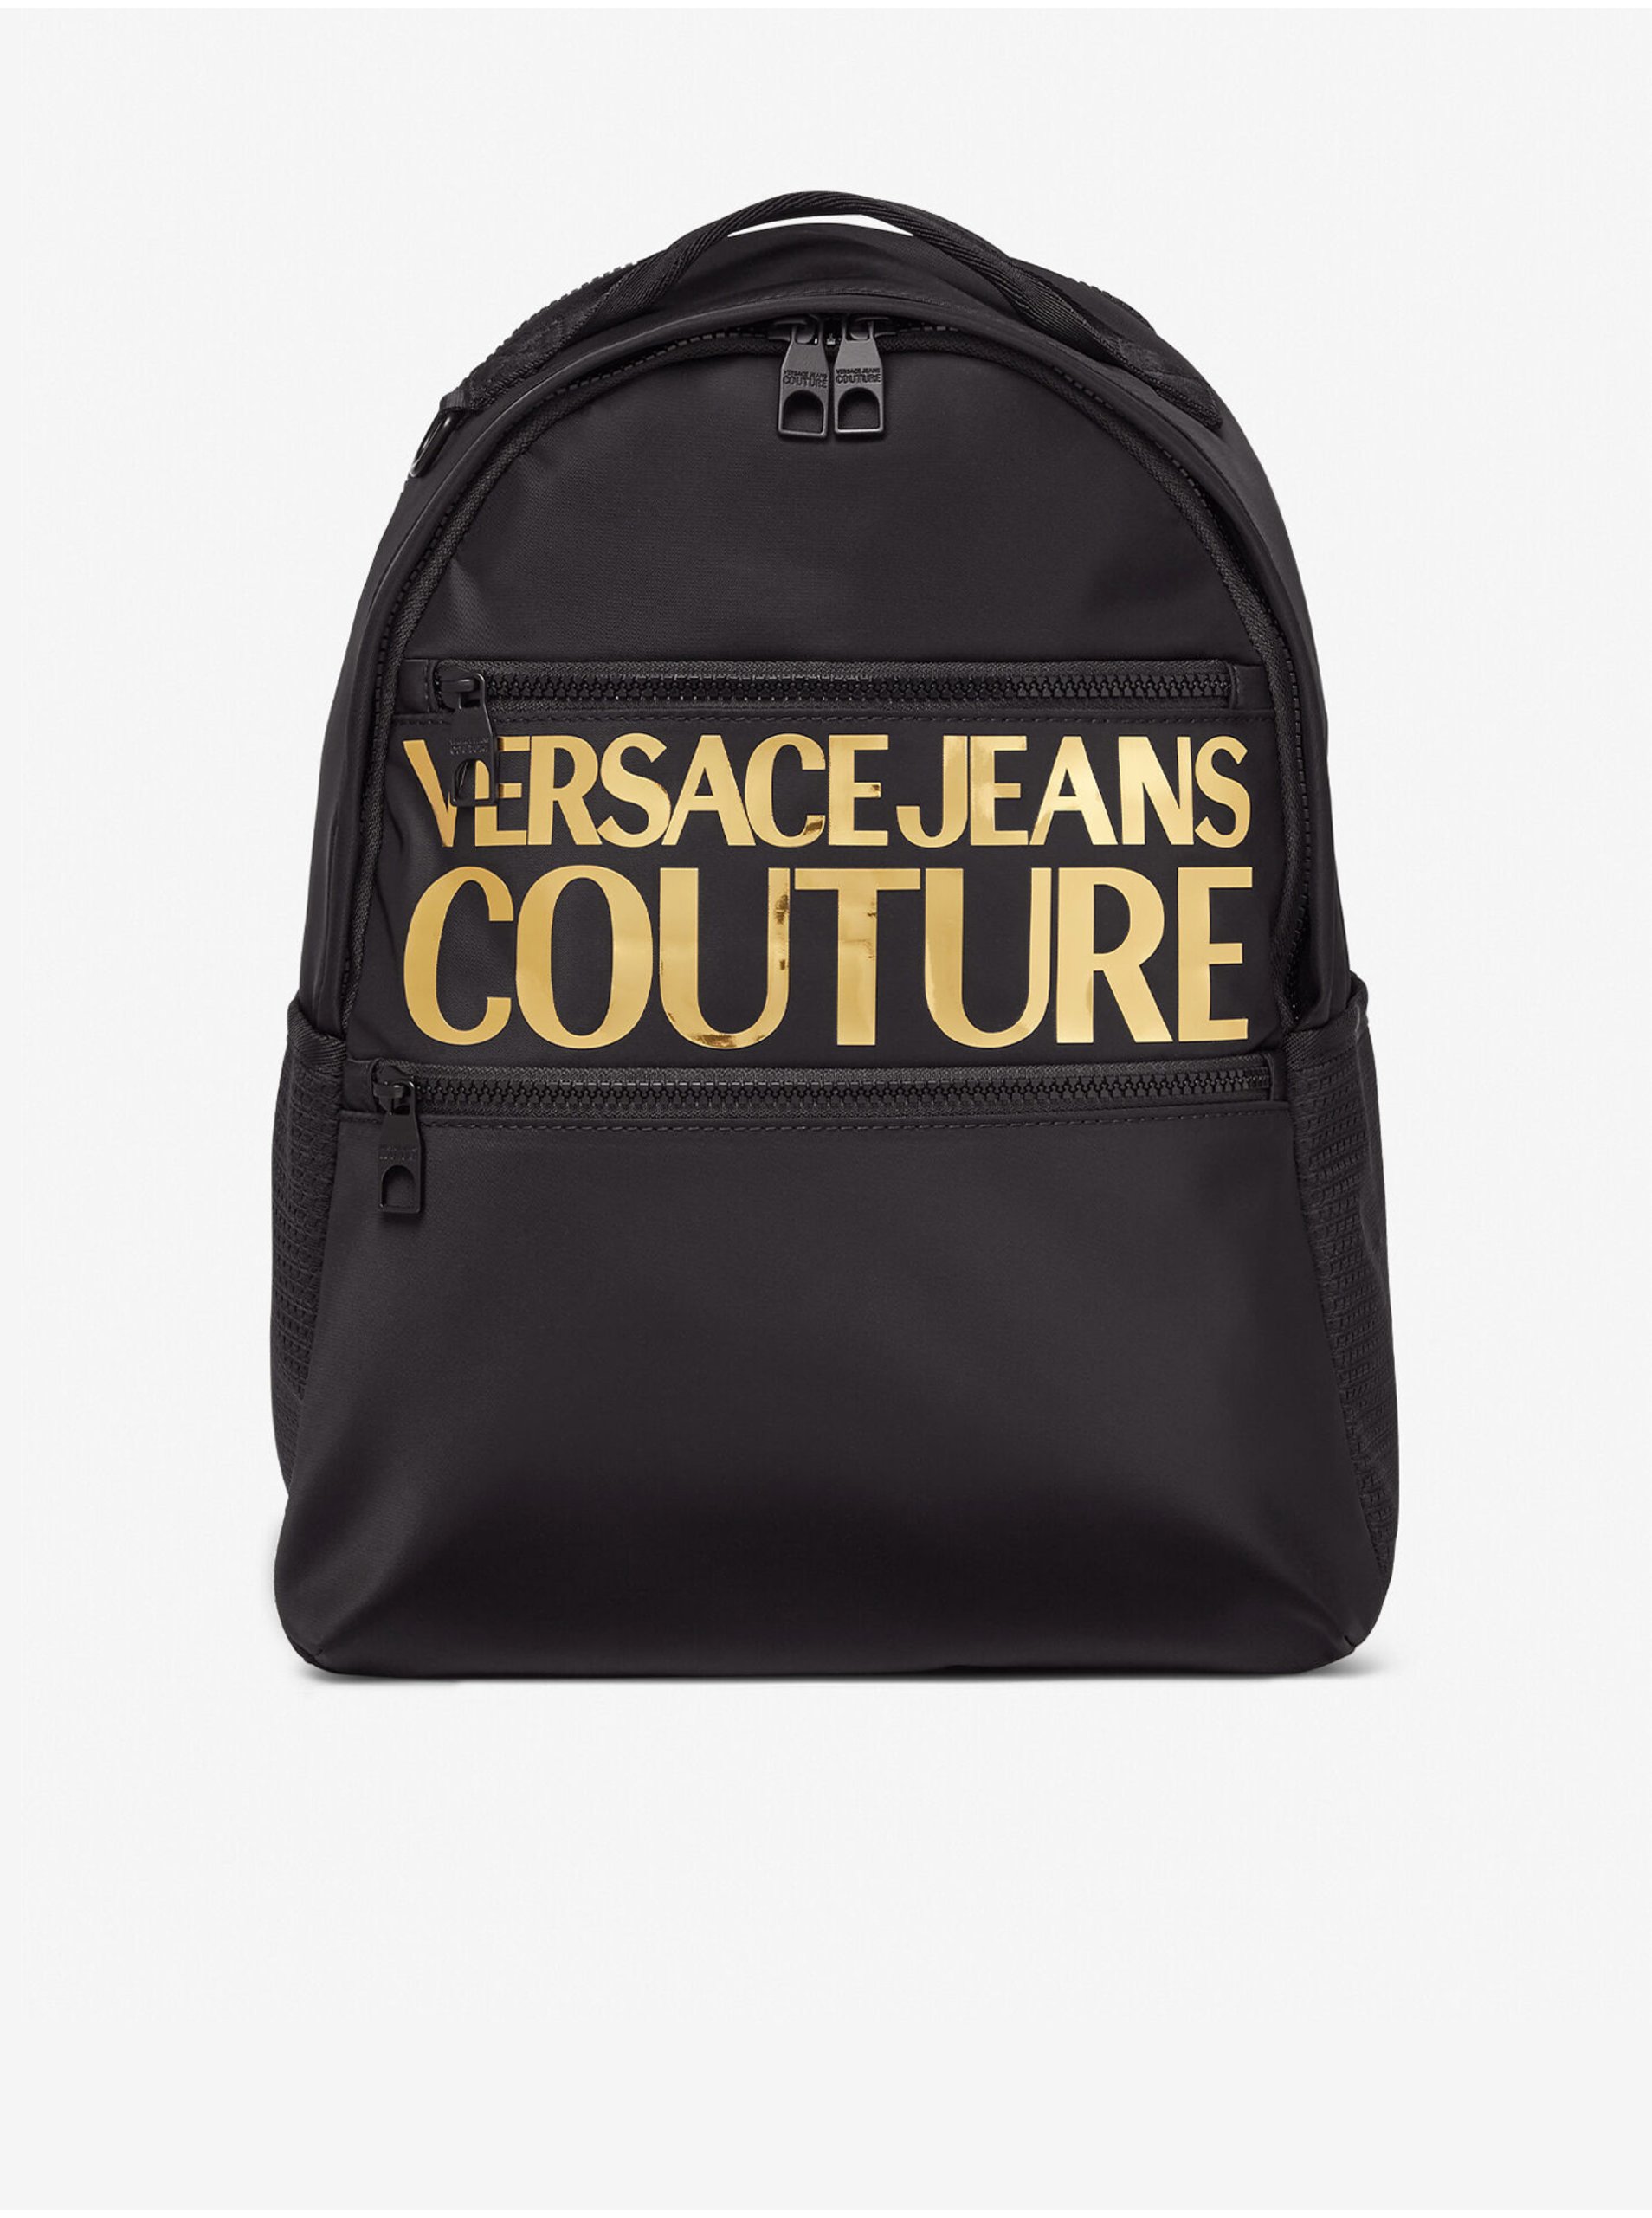 Lacno Čierny pánsky batoh s nápisom Versace Jeans Couture